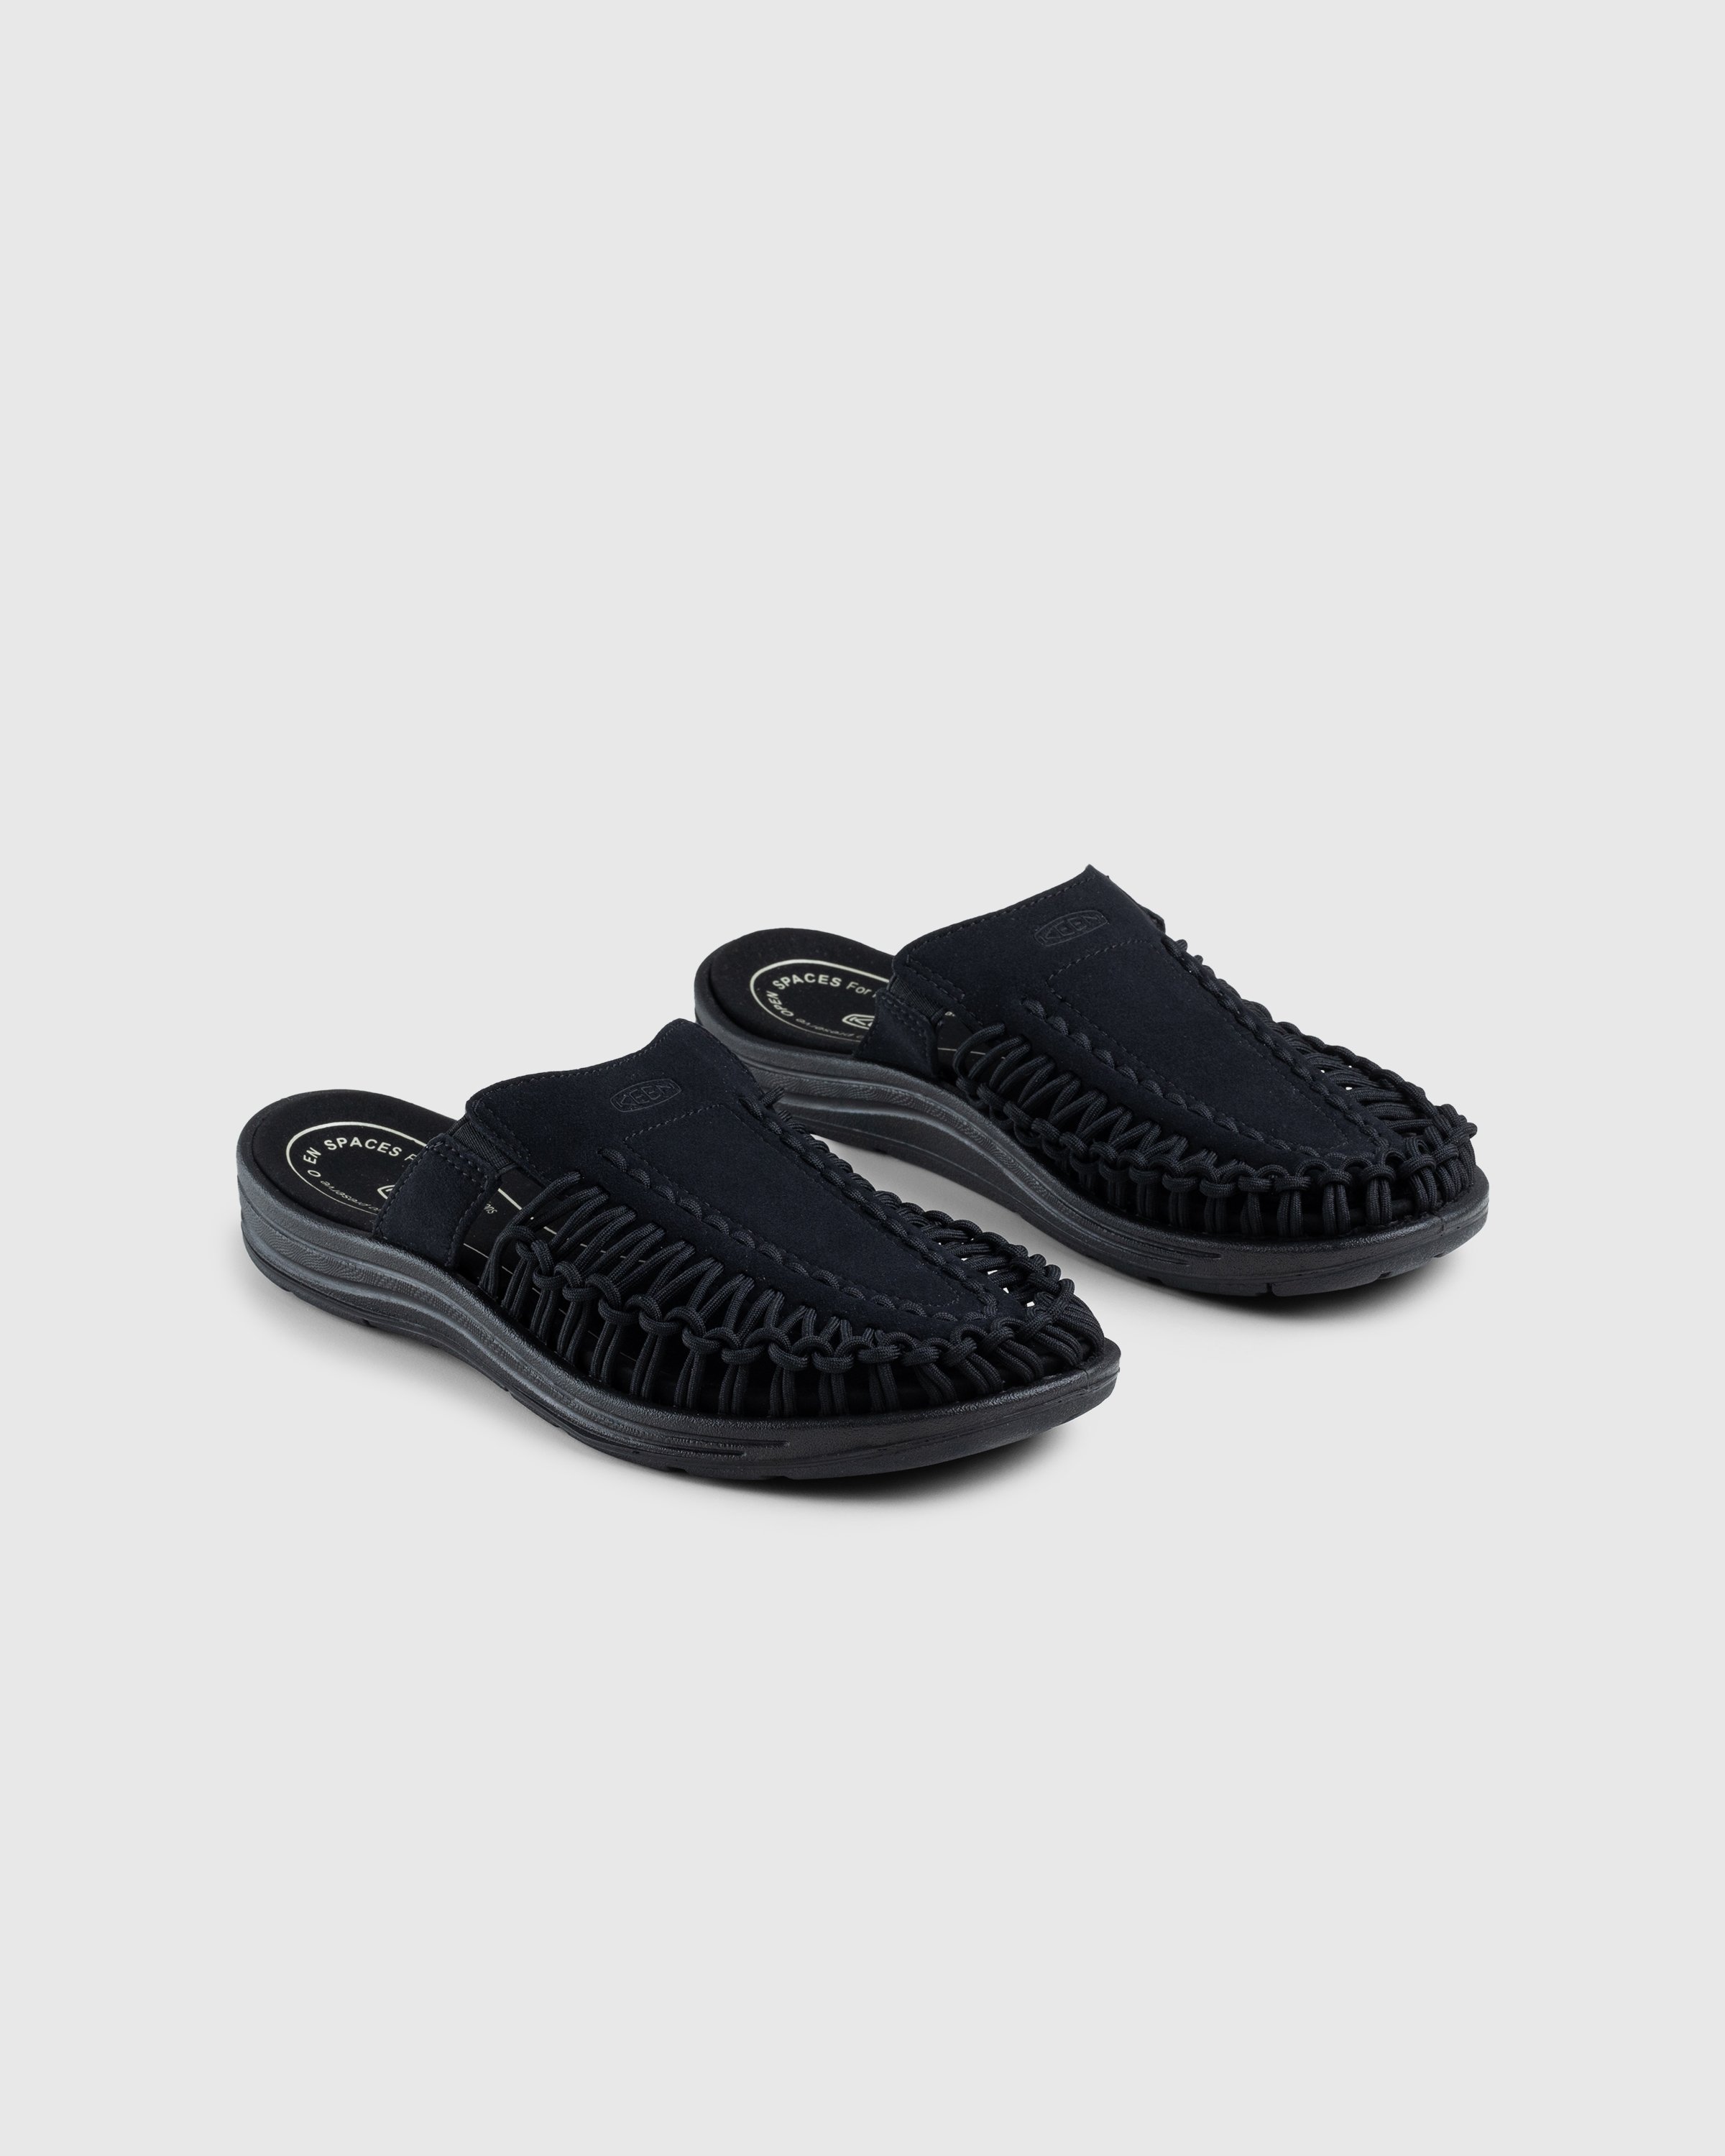 Keen - Uneek II Slide Black - Footwear - Black - Image 3